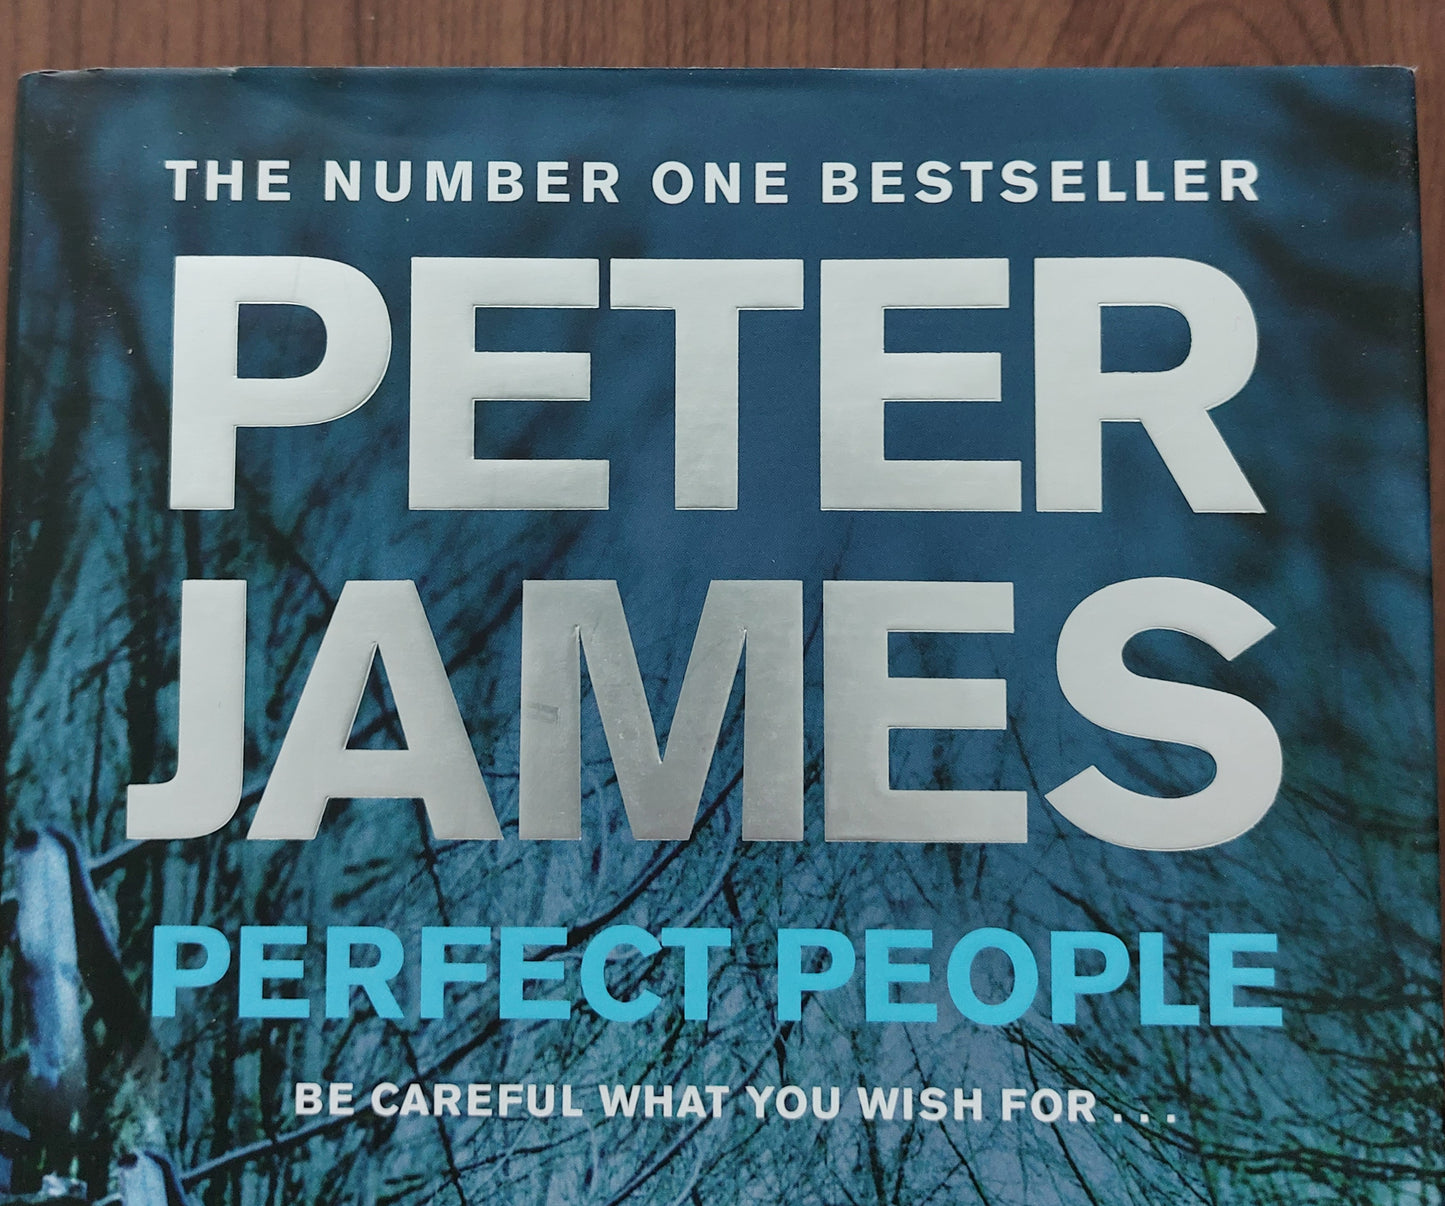 Des gens parfaits de Peter James